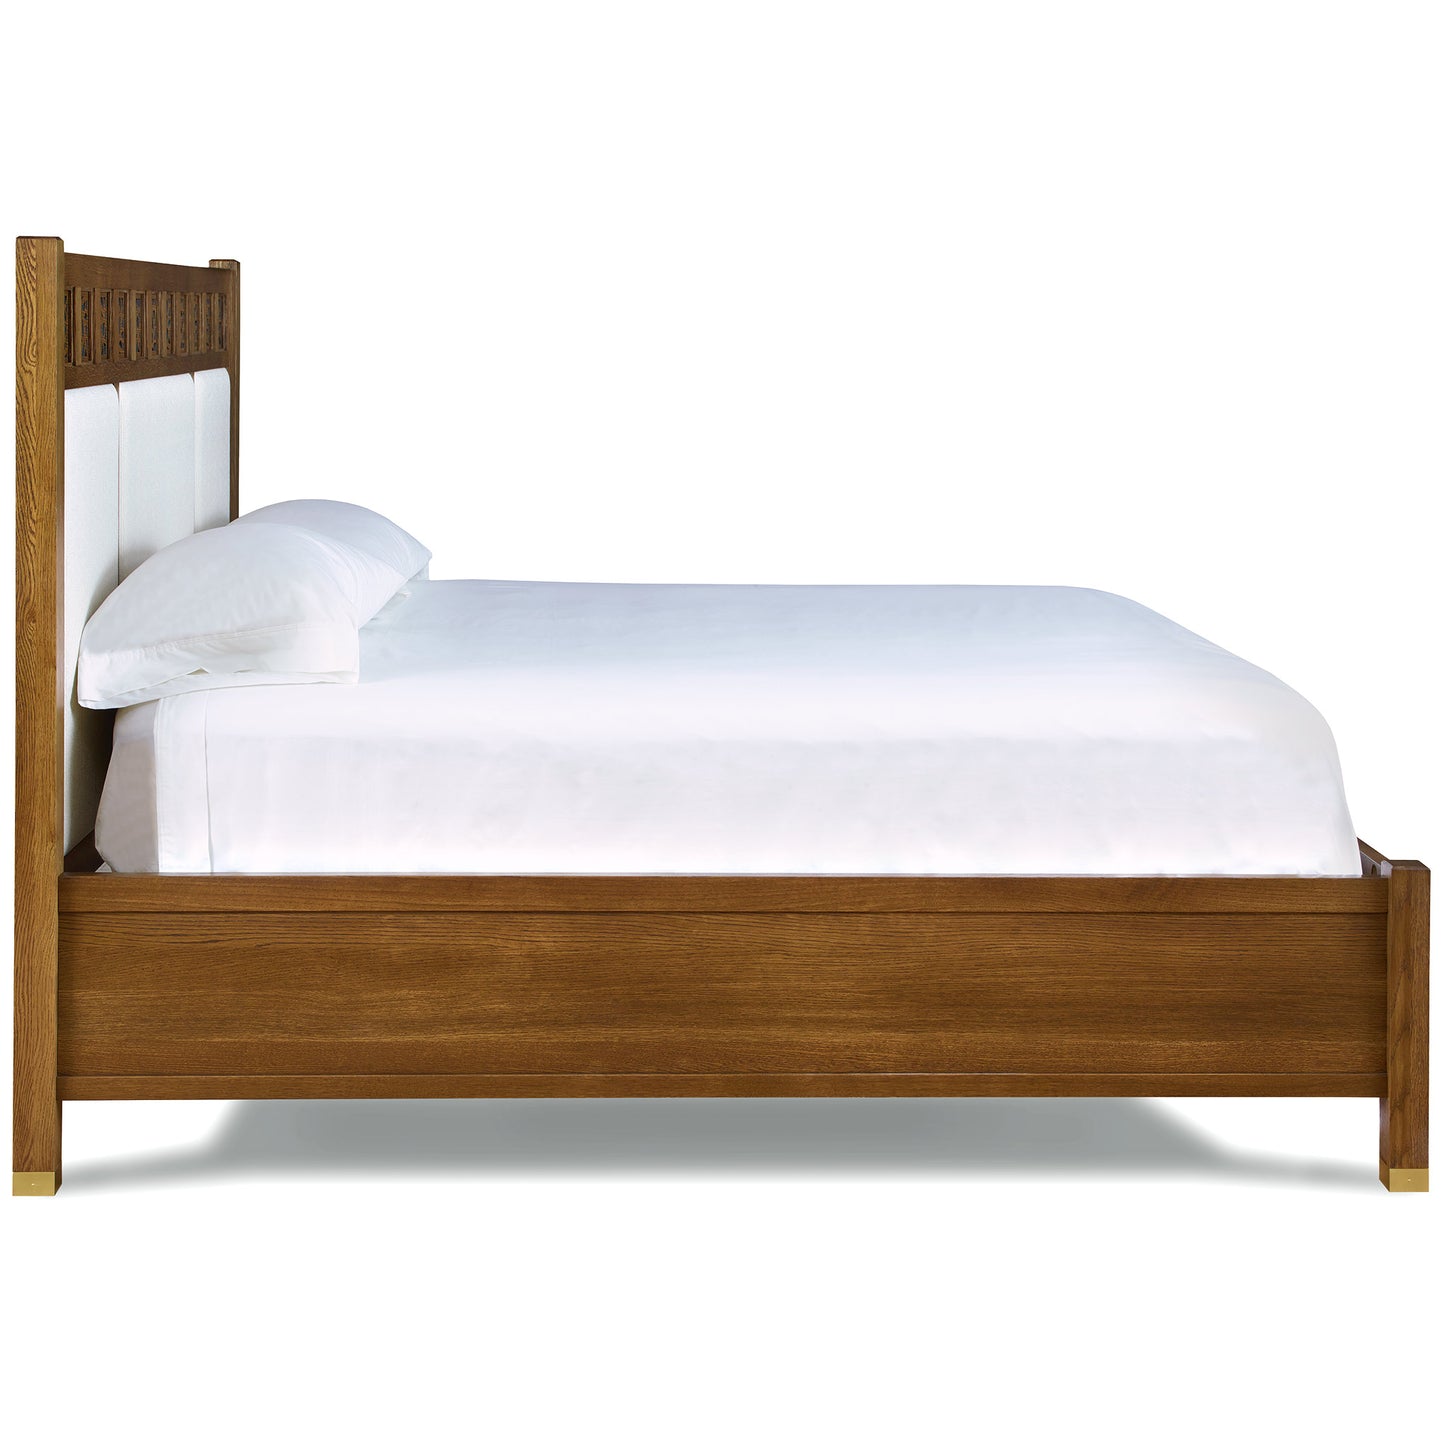 Surrey Hills Upholstered Panel Bed